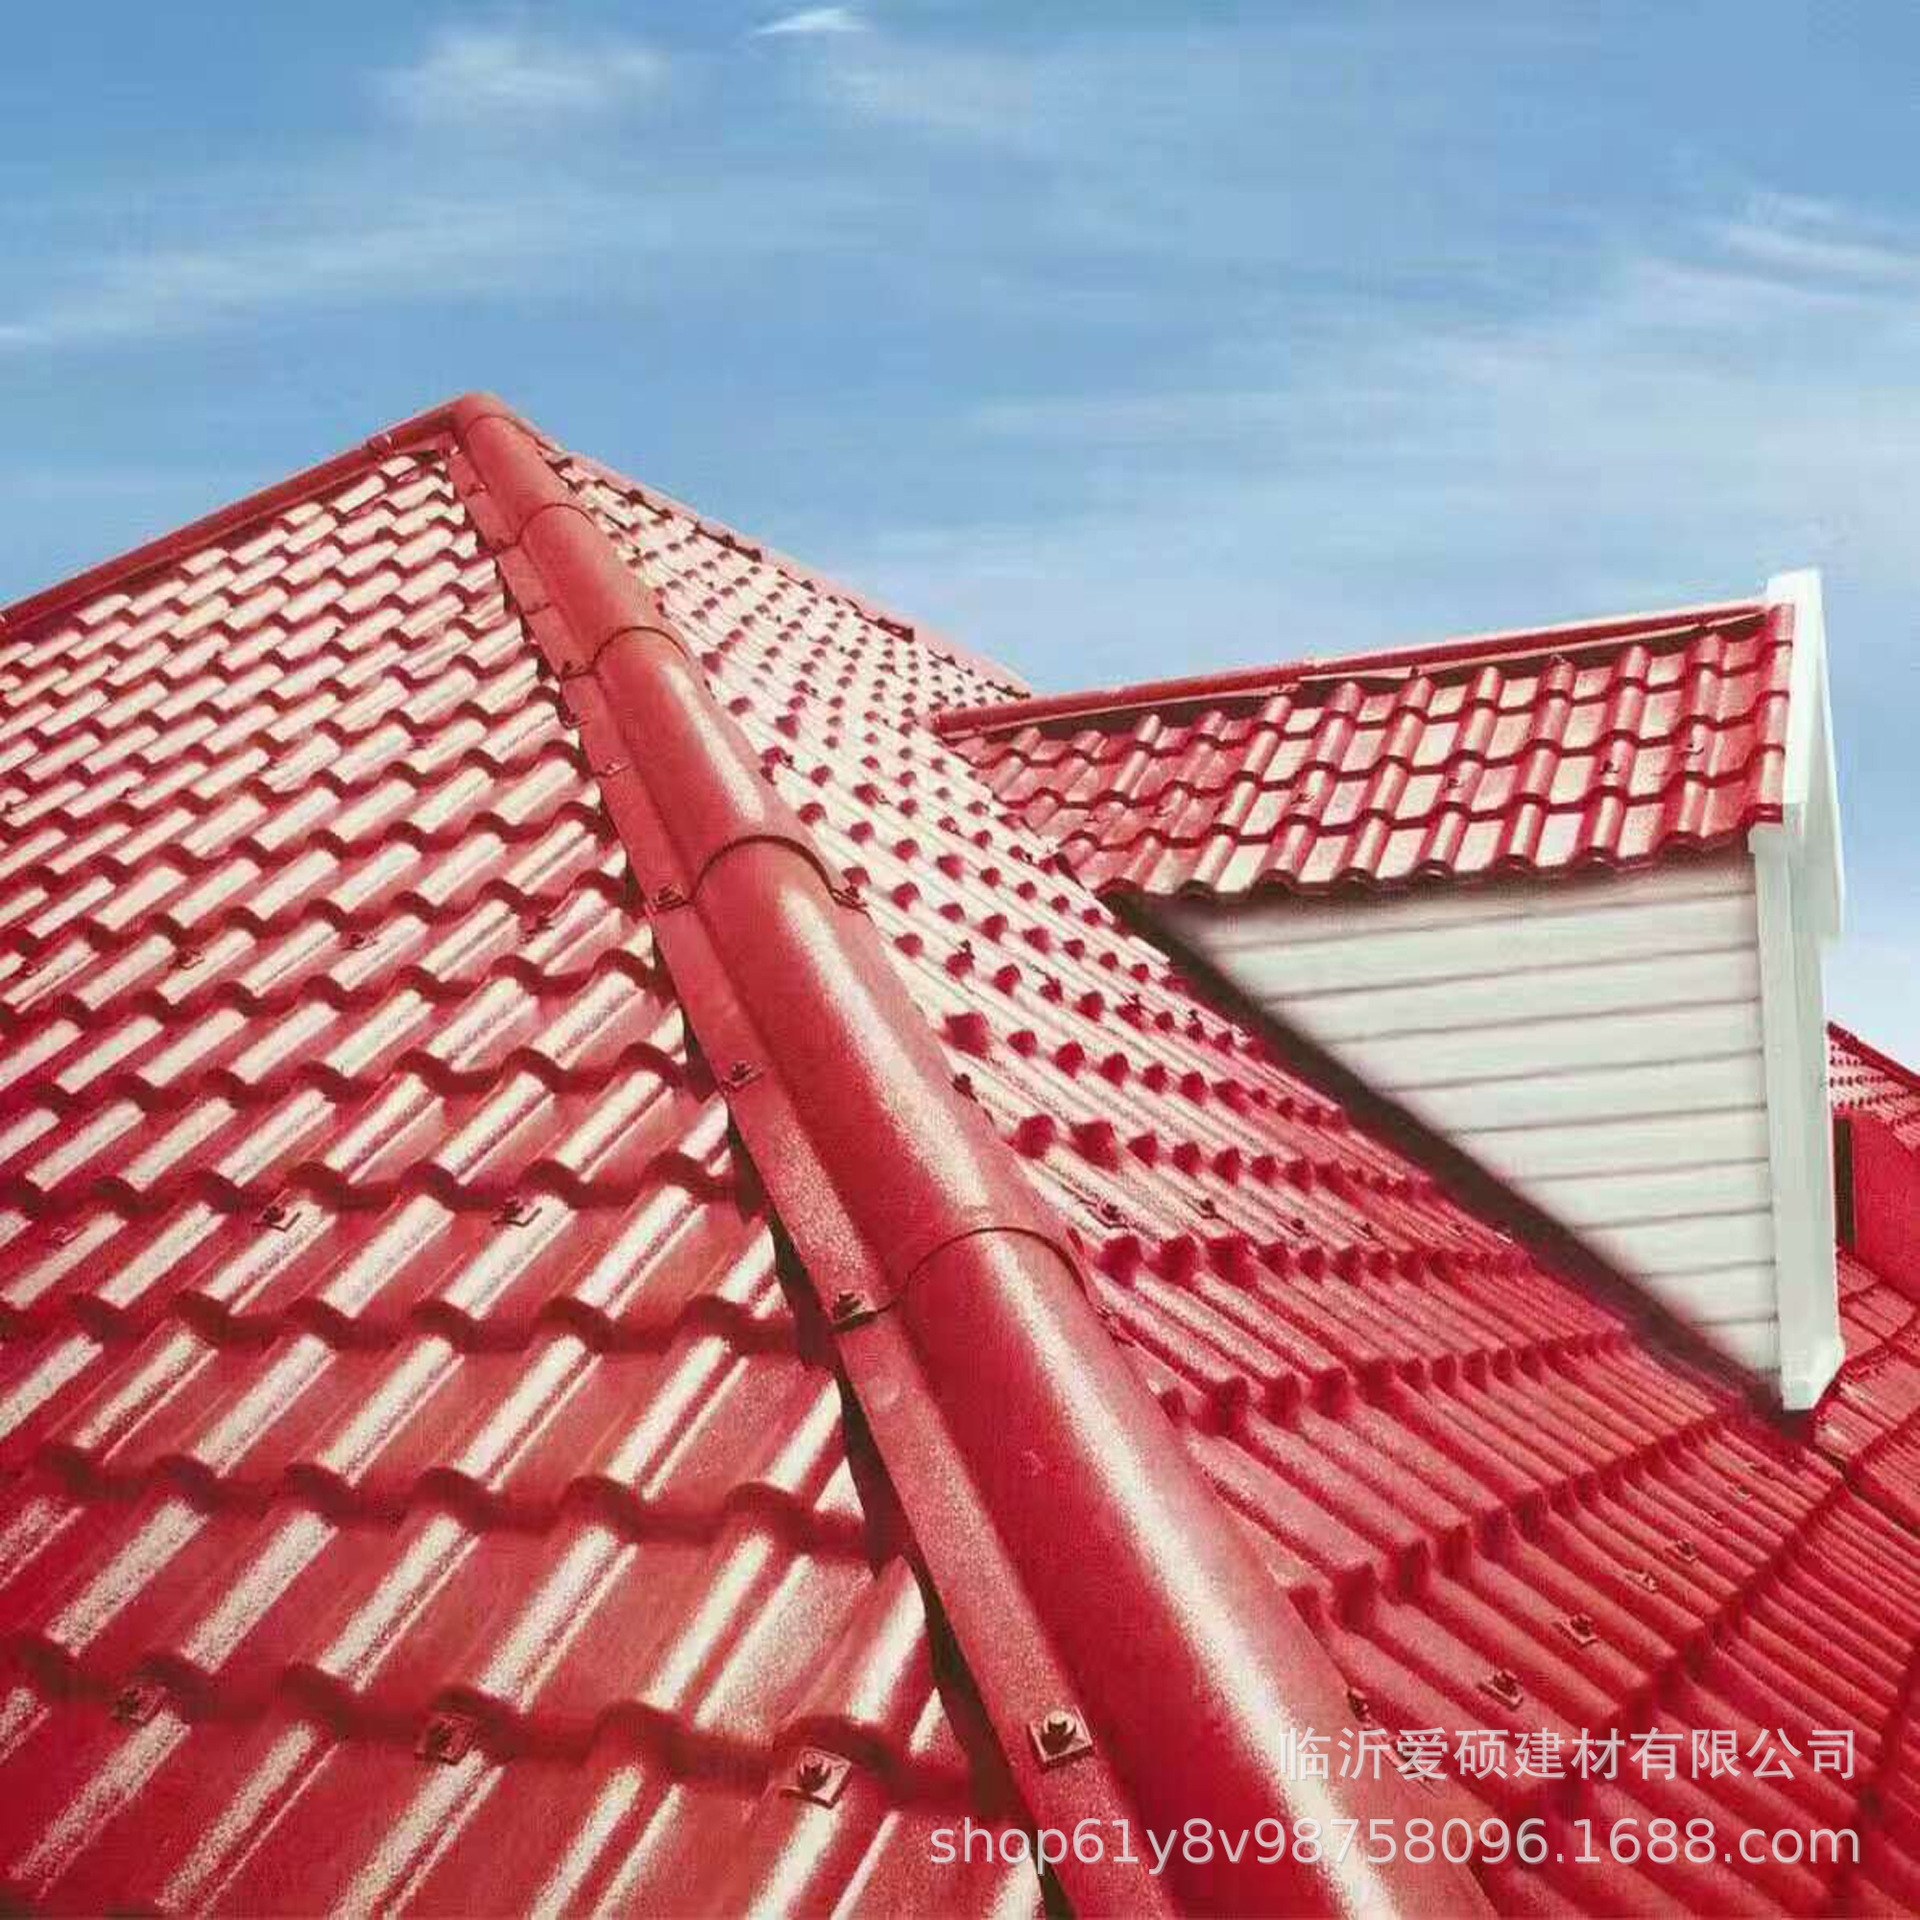 泰安合成树脂瓦 平改坡屋面瓦 仿古建筑屋顶琉璃瓦一平方米多少钱示例图3